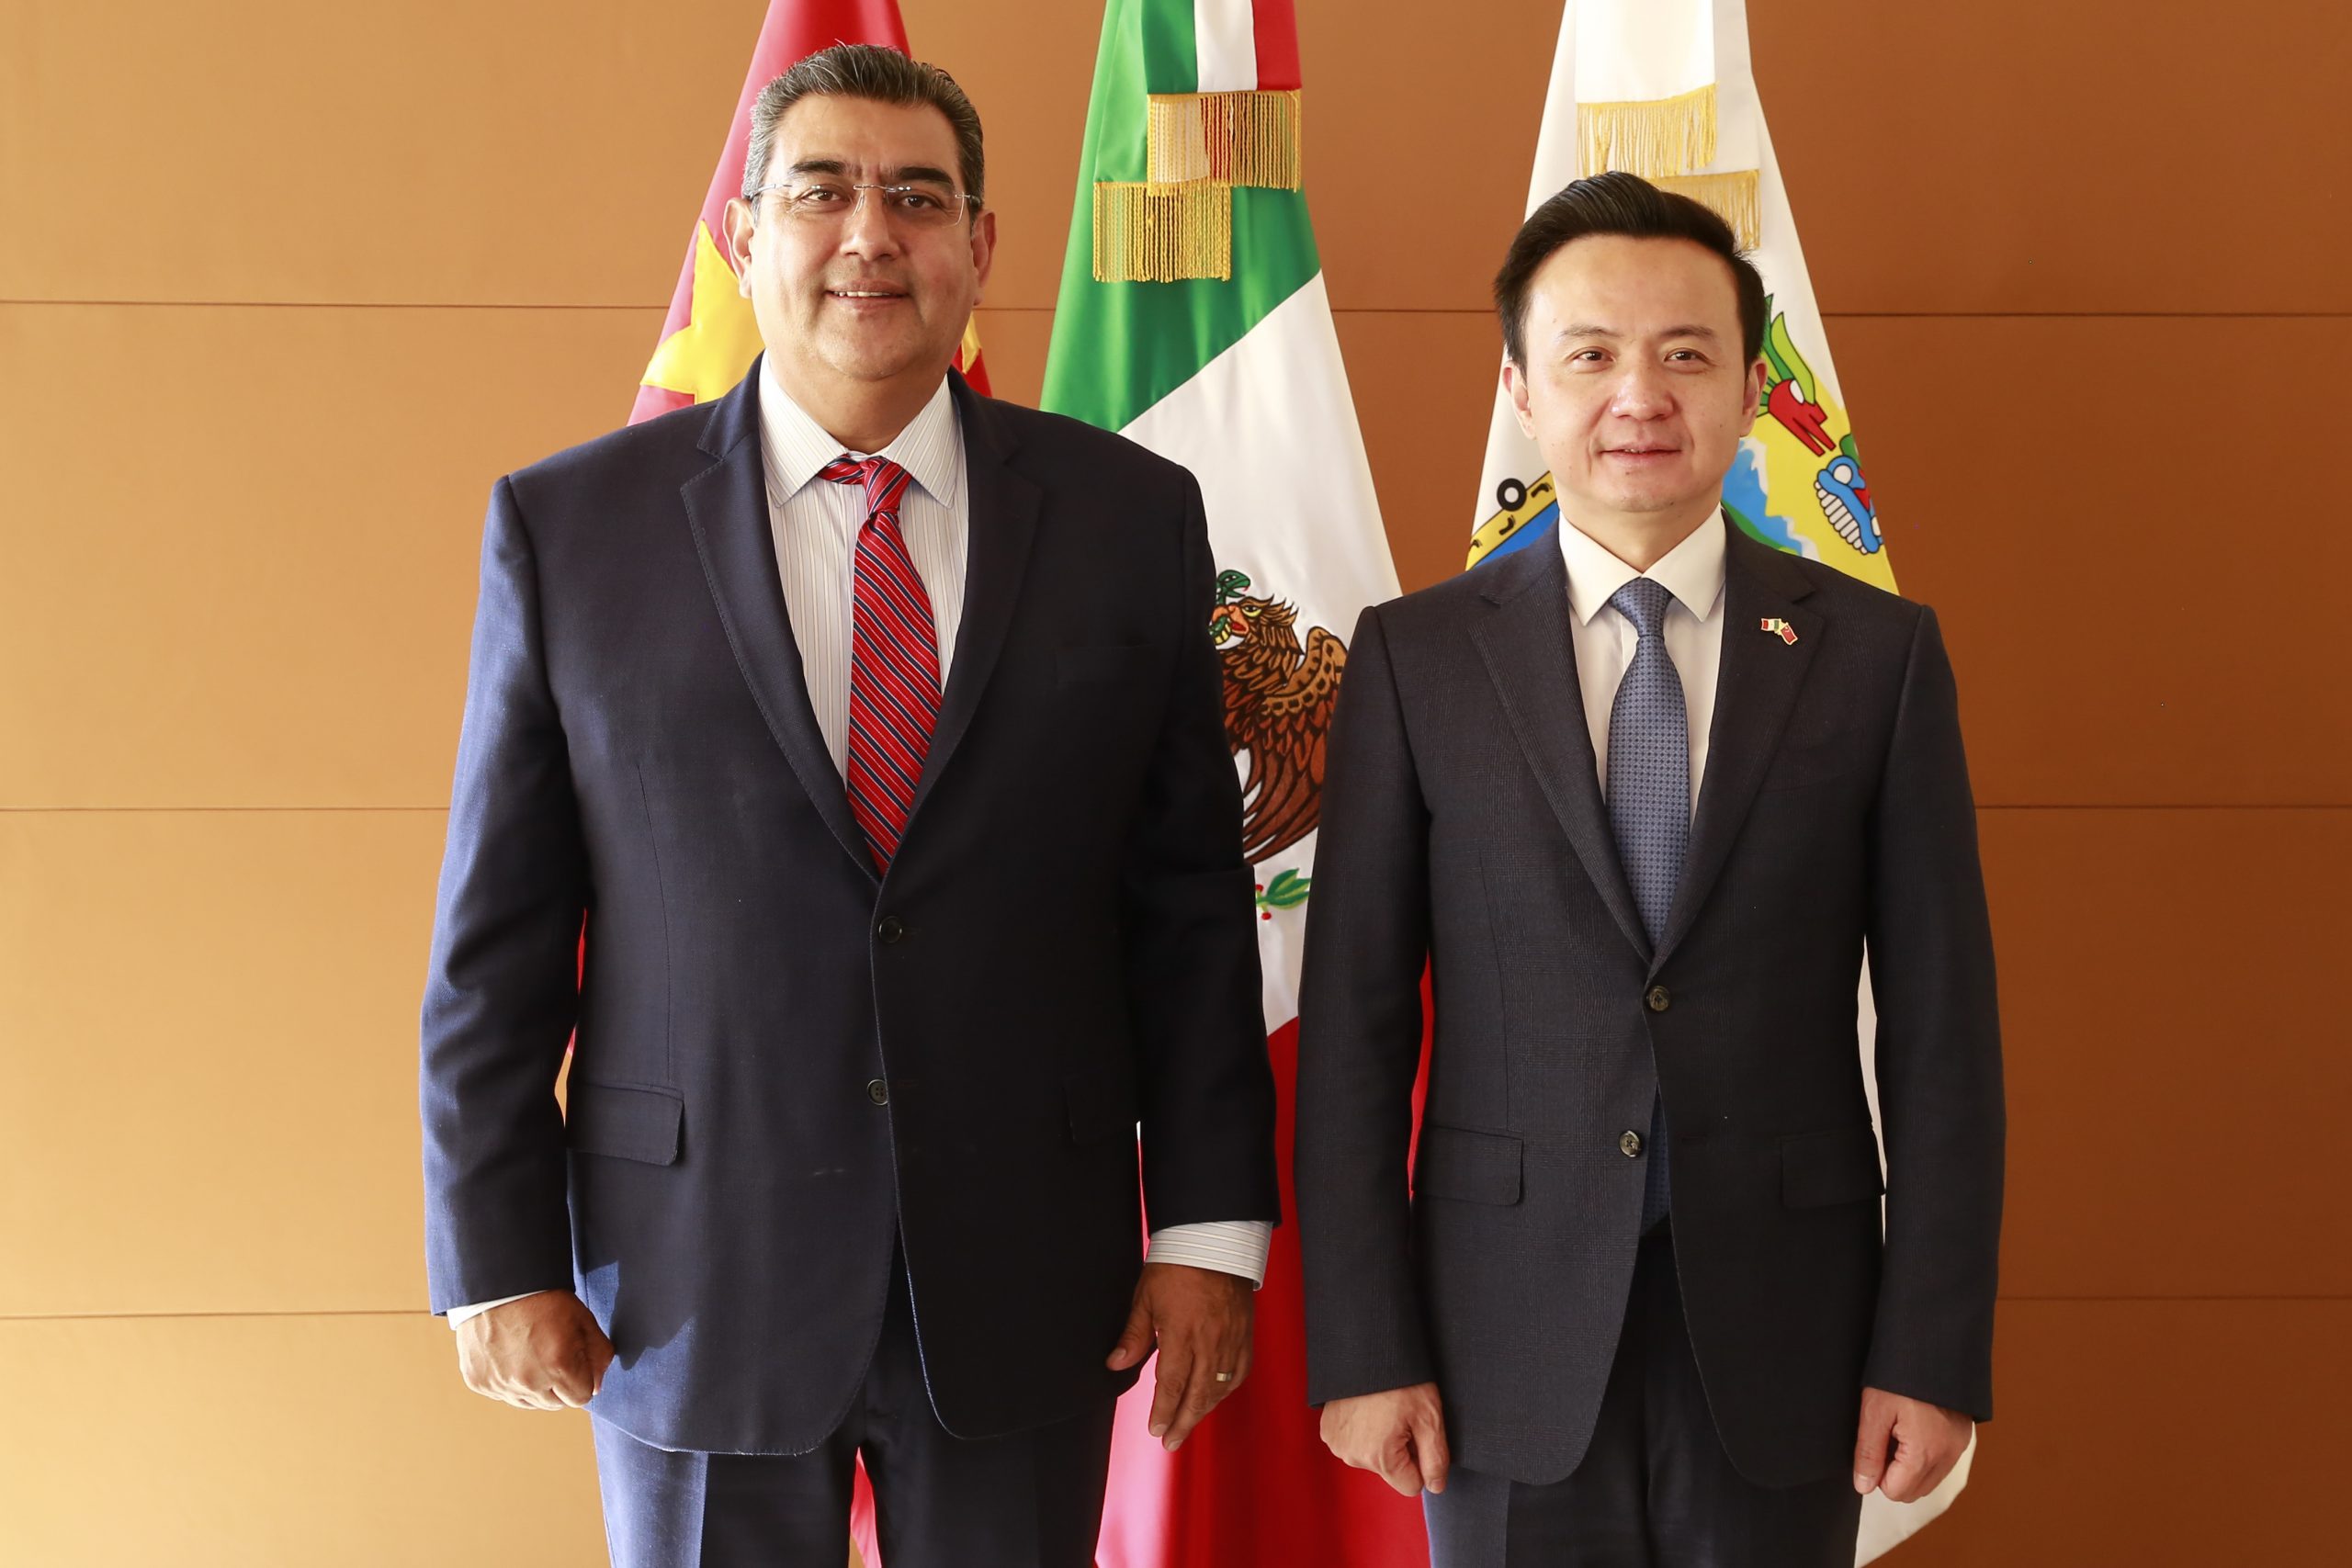 Gobernador Céspedes Peregrina refuerza relaciones con China y Unión